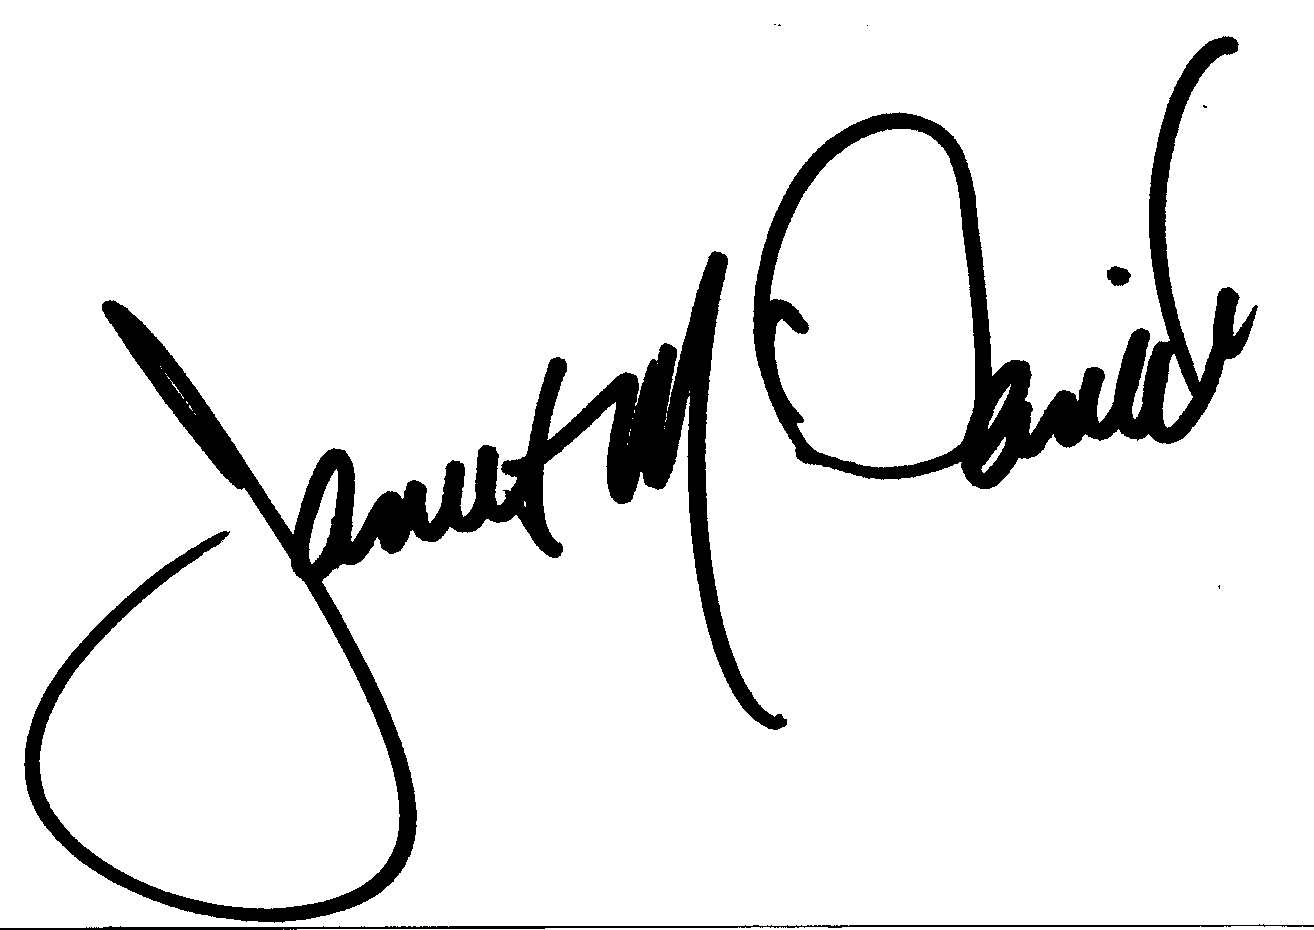 James McDaniel autograph facsimile